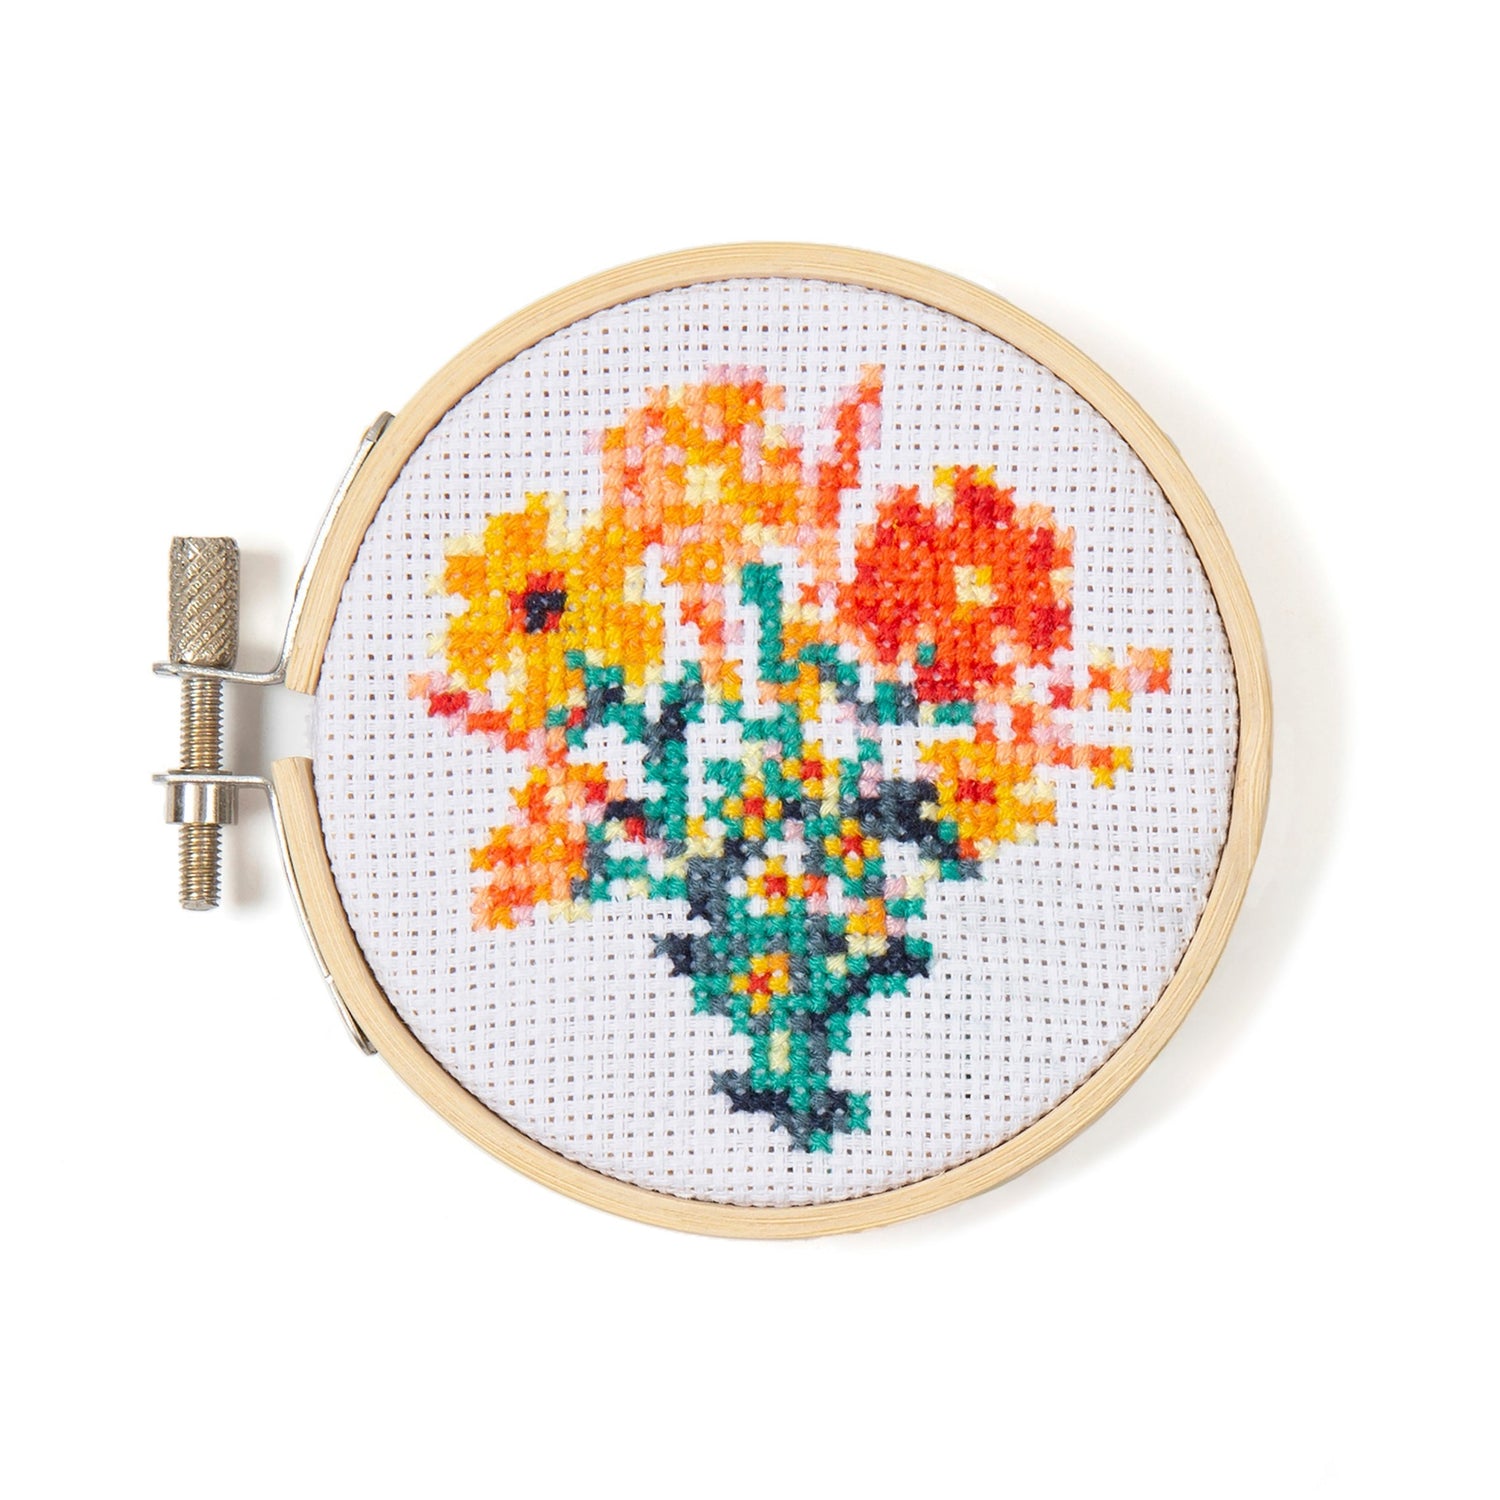 Mini Cross-Stitch Embroidery Kit - Mushroom